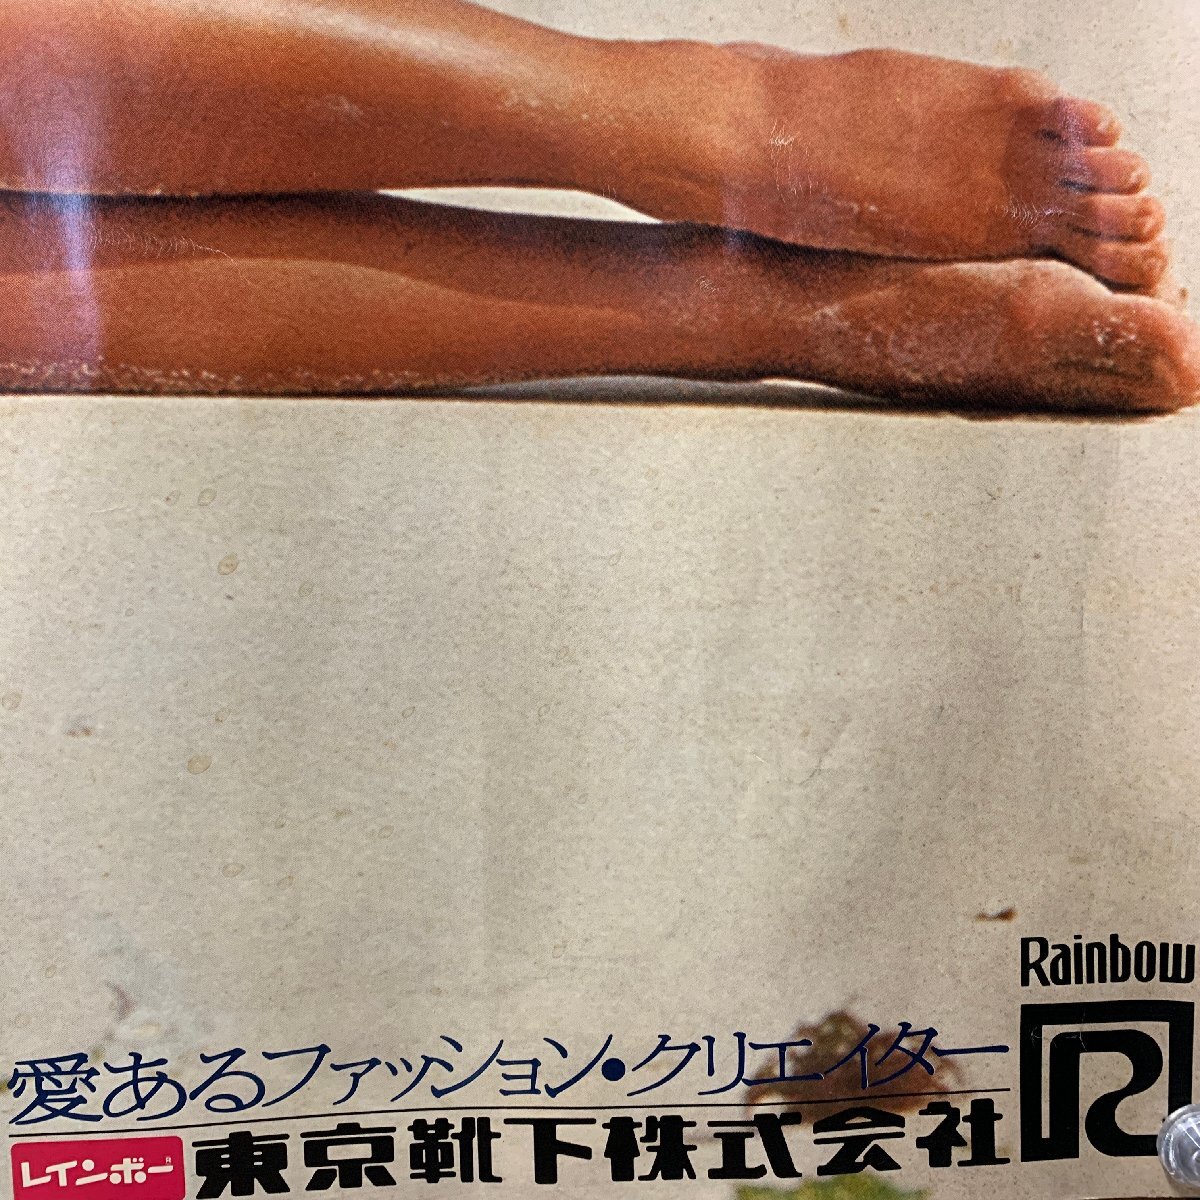 [B1 ширина длина постер ] UGG nes* Ram Rainbow Tokyo носки акционерное общество agnes lum купальный костюм <103×72.8cm>*